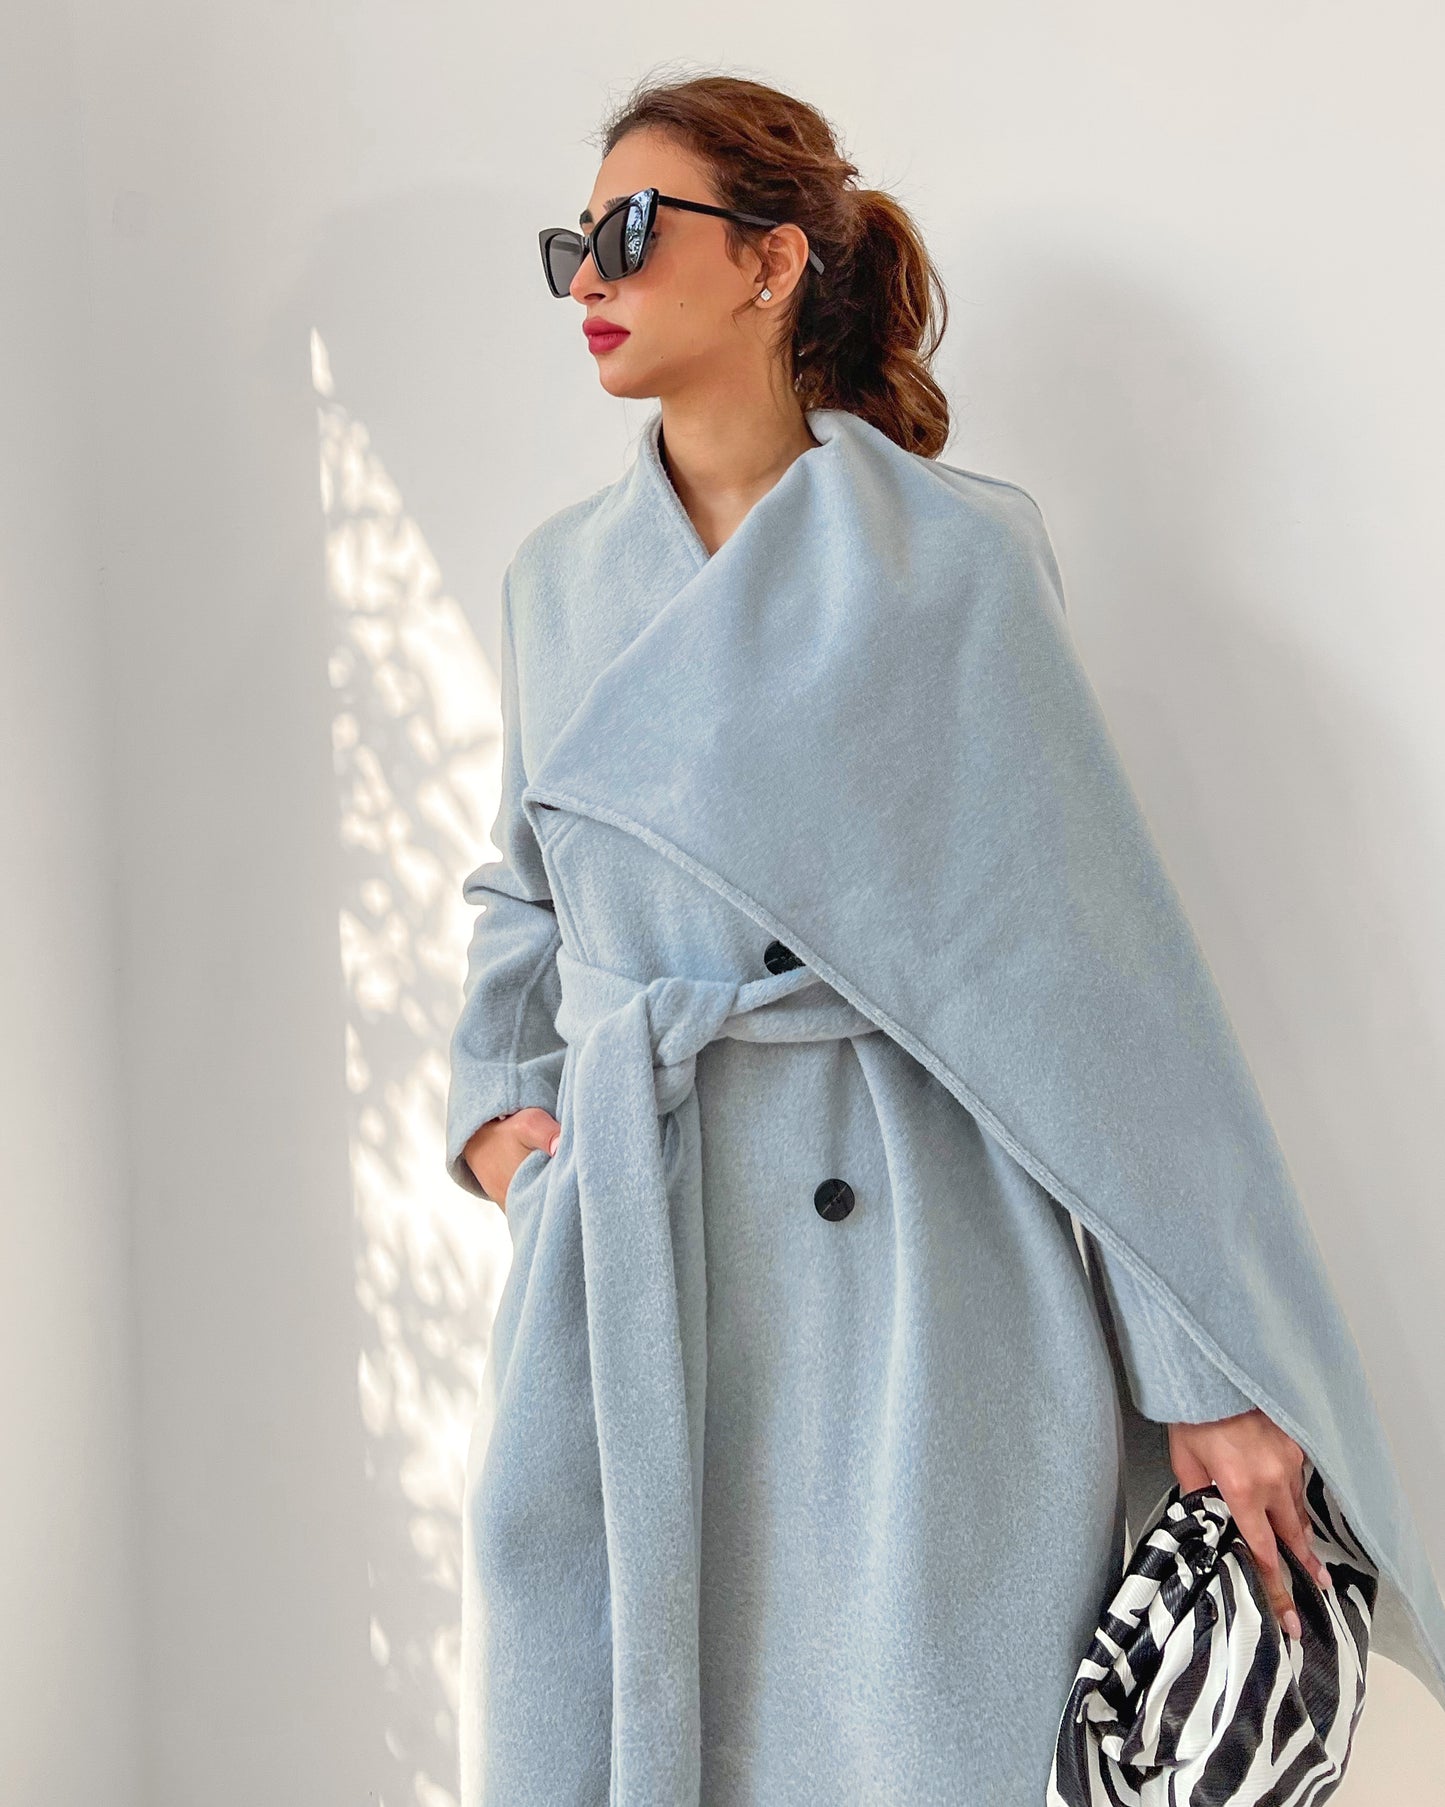 One side shawl collar blue coat